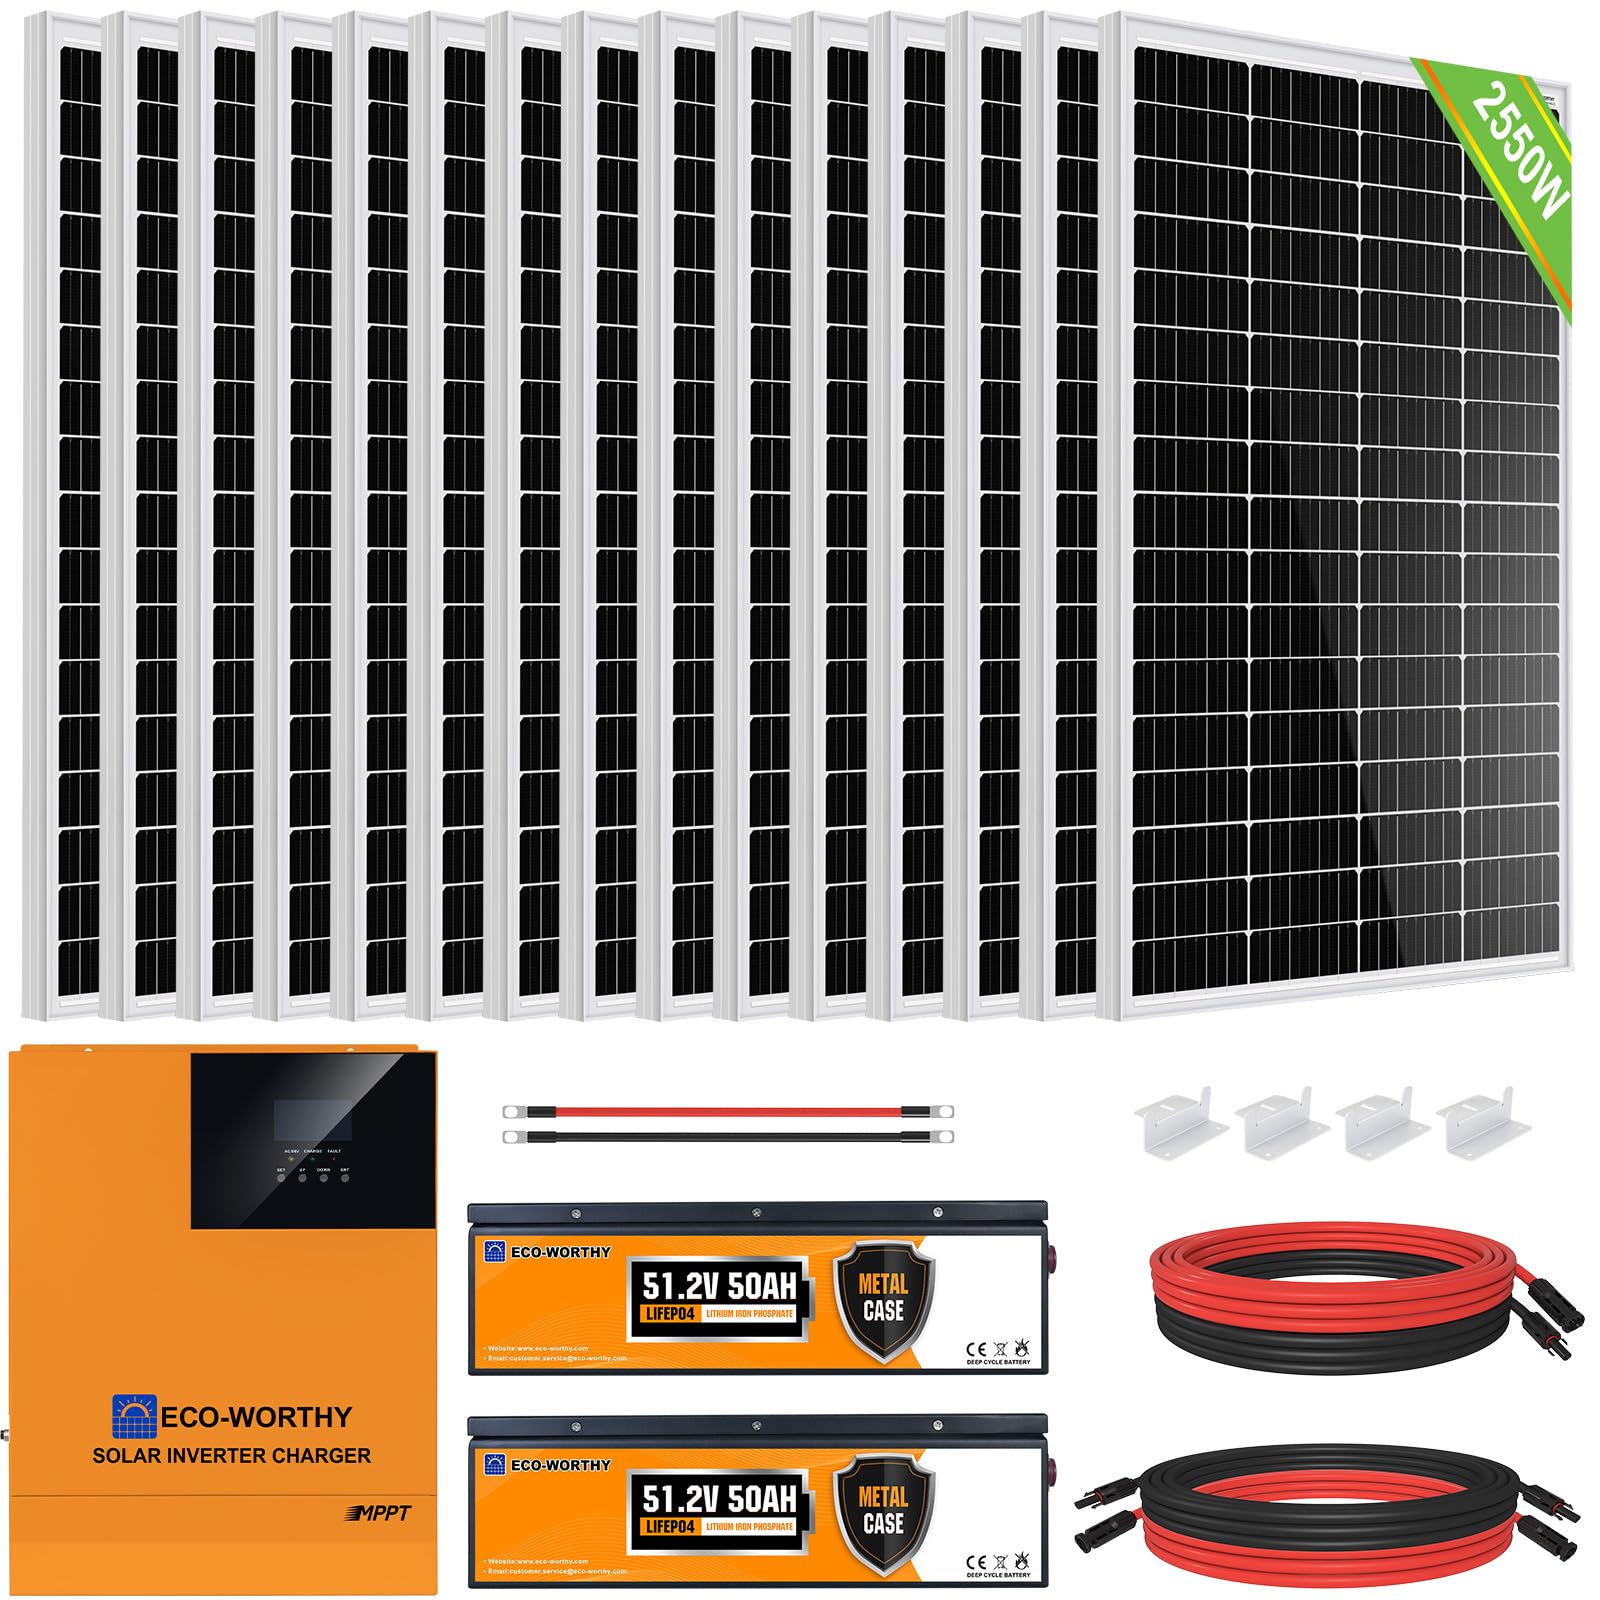 ECO-WORTHY 10.2KWH 2500W 48V Solaranlage Komplettset mit LiFePO4 für Netzunabhängige System,Wohnmobil: 15 * 170W Solarpanel+ 2 * 48V 50Ah LiFePO4+5000W 48V Hybrid Inverter